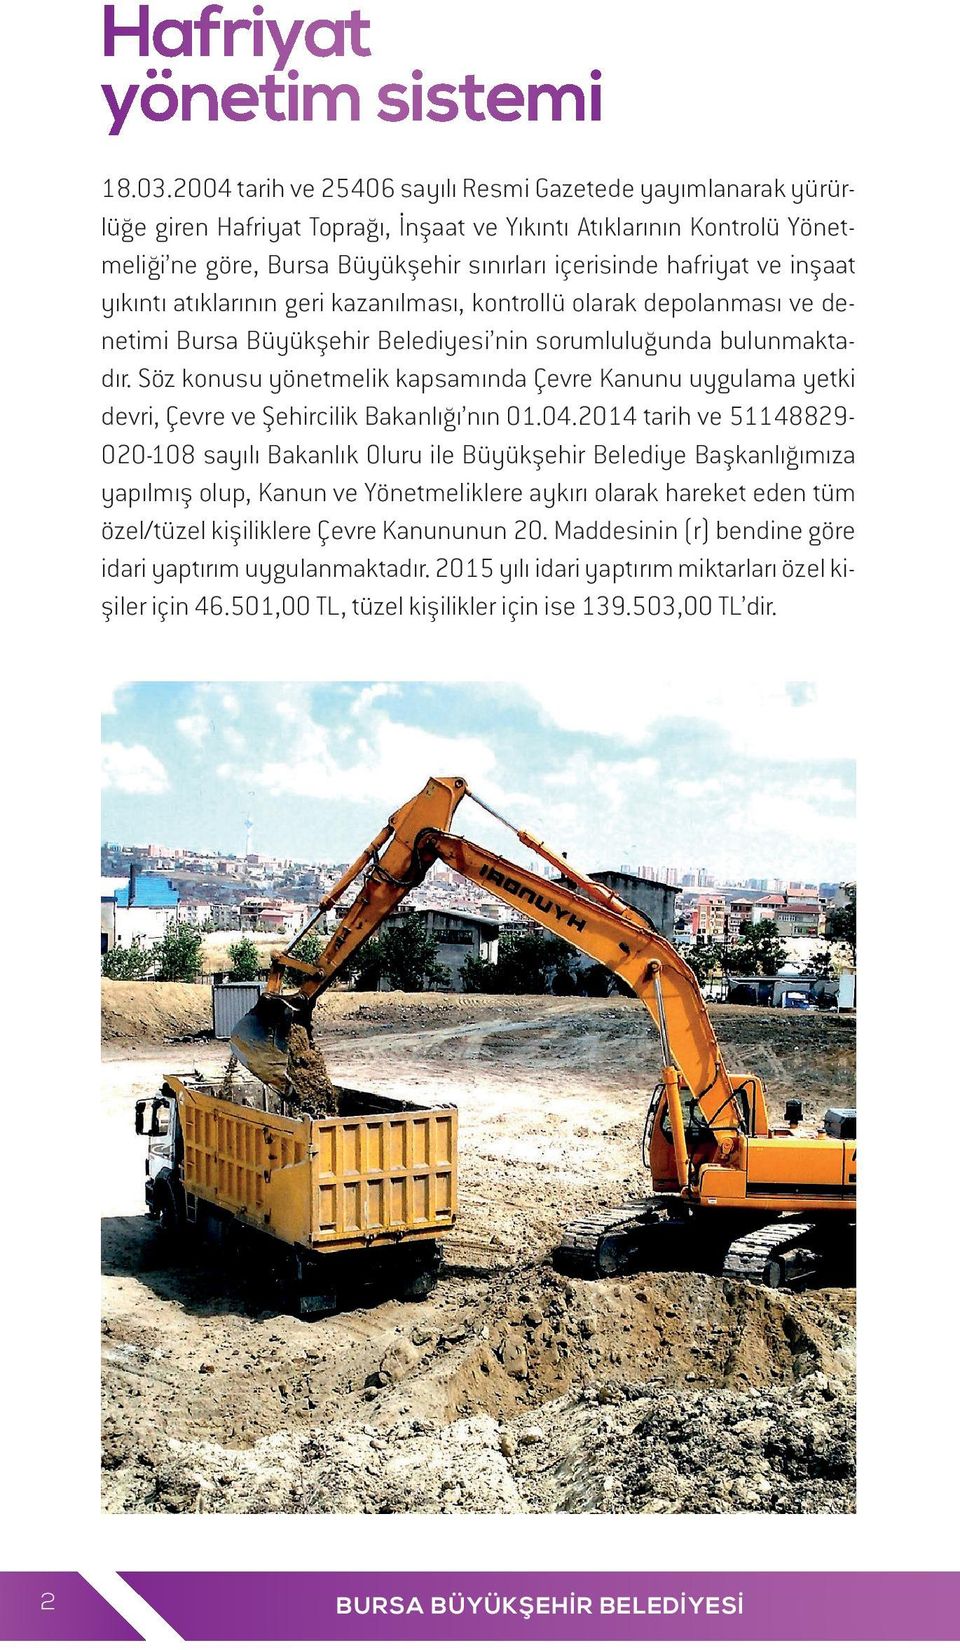 inşaat yıkıntı atıklarının geri kazanılması, kontrollü olarak depolanması ve denetimi Bursa Büyükşehir Belediyesi nin sorumluluğunda bulunmaktadır.